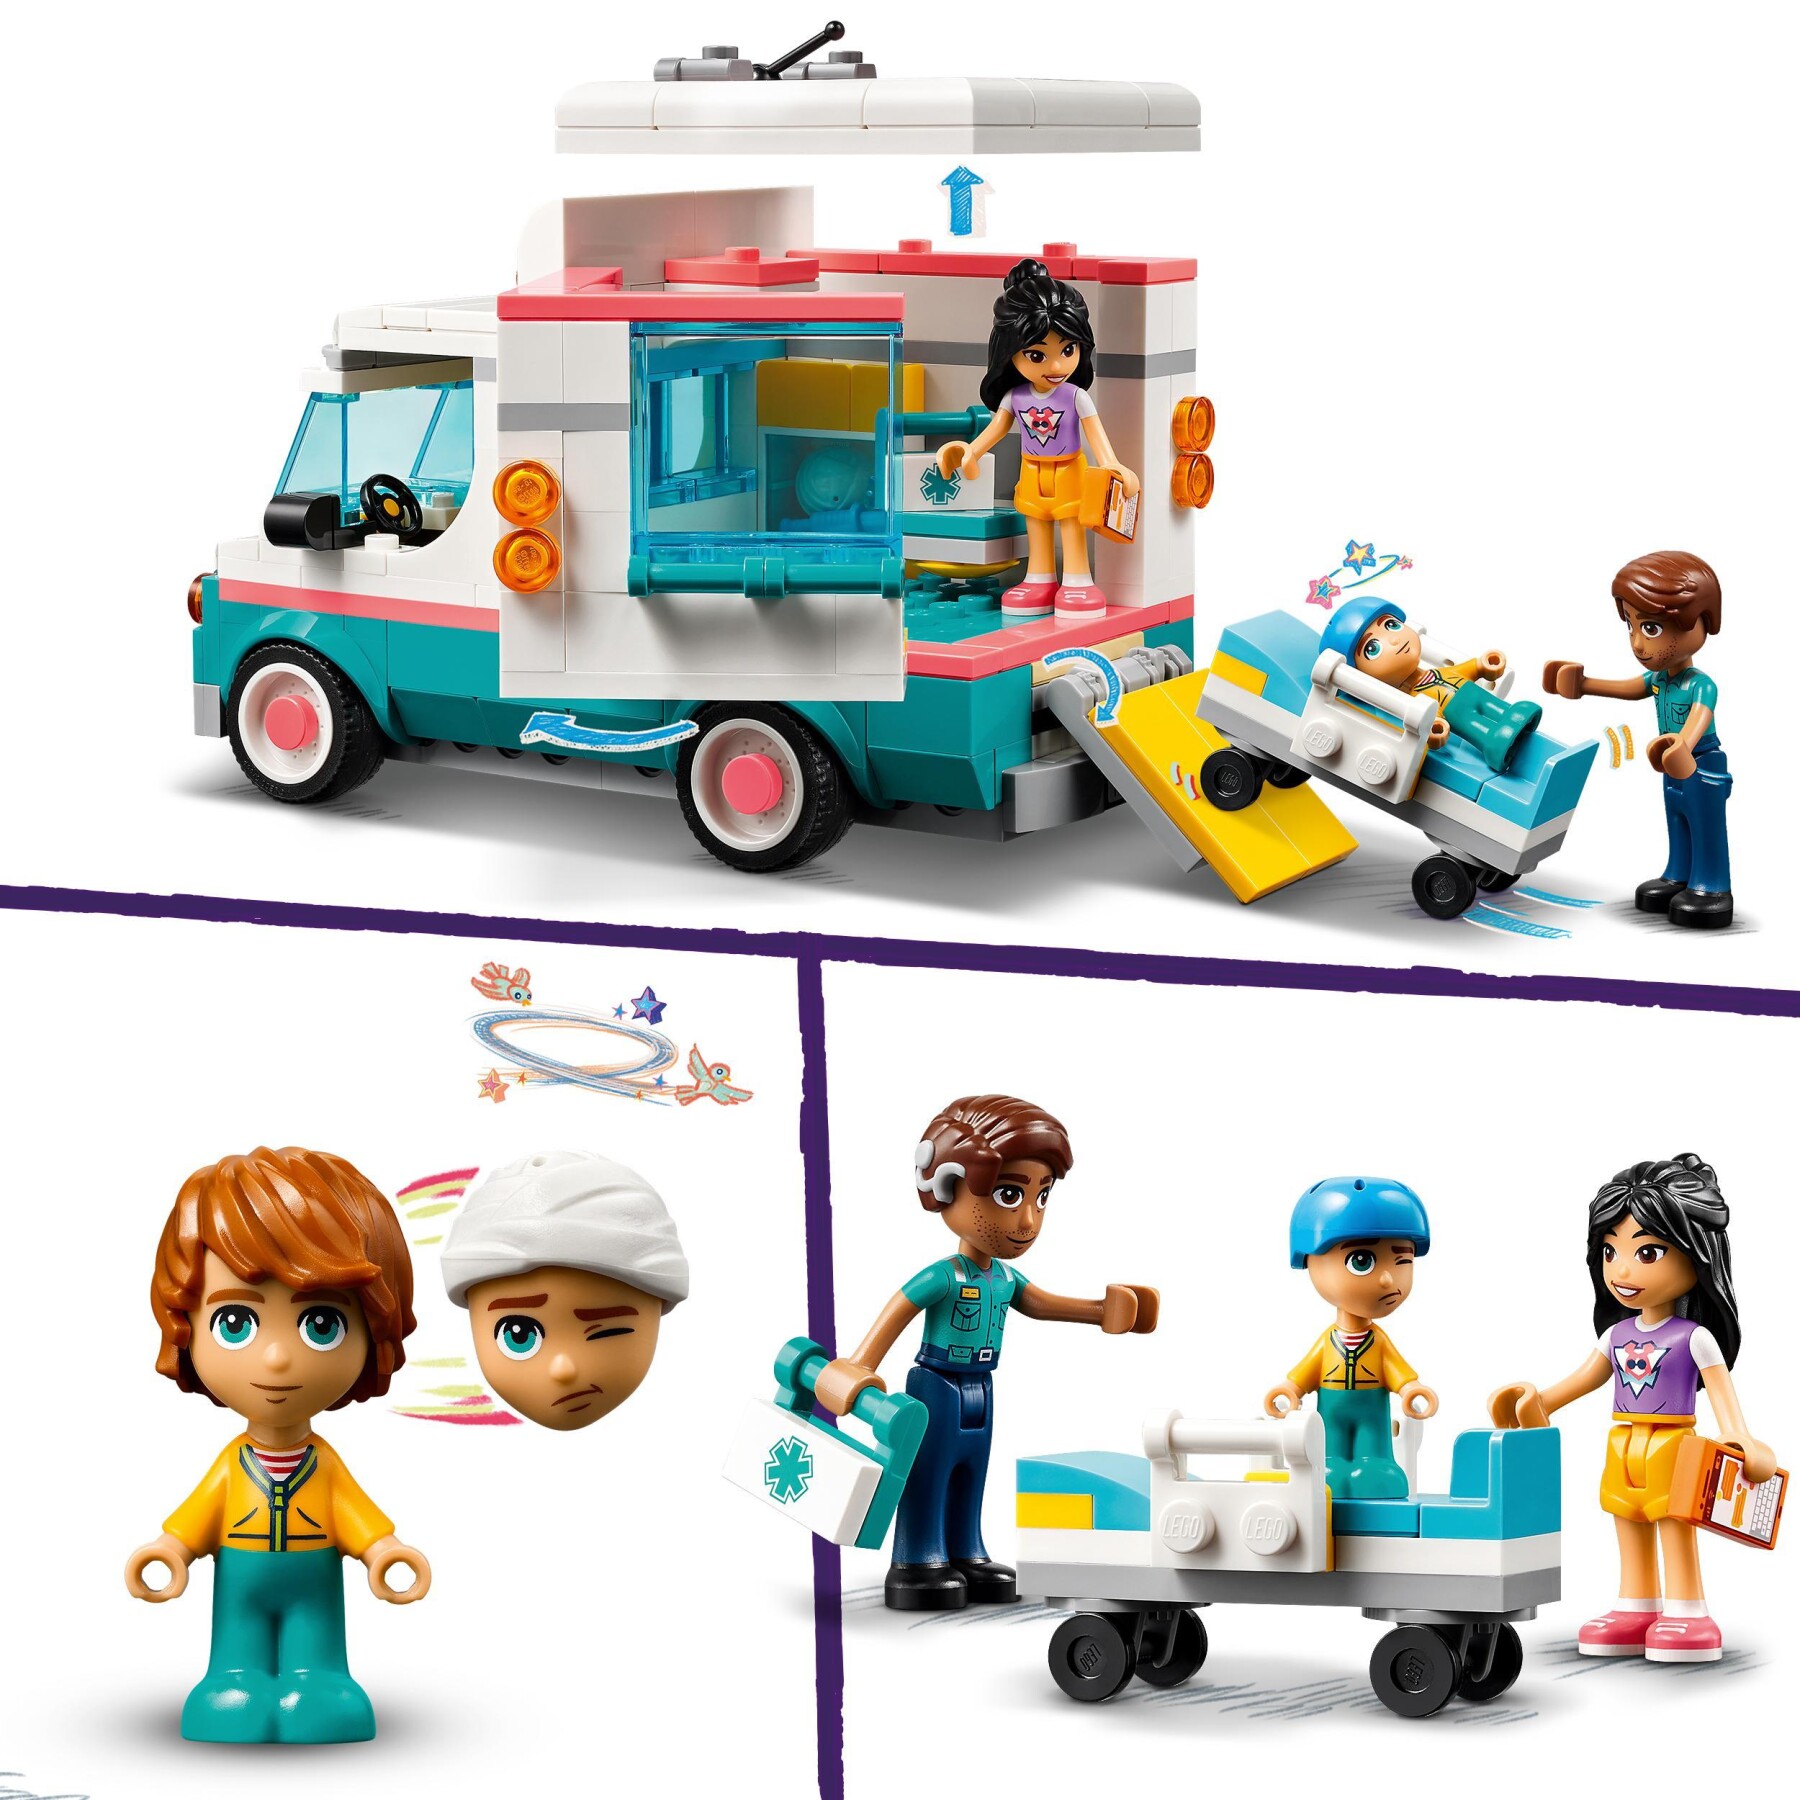 Lego friends 42613 ambulanza dell’ospedale di heartlake city, giochi per bambini 6+ con veicolo giocattolo e 3 mini bamboline - LEGO FRIENDS